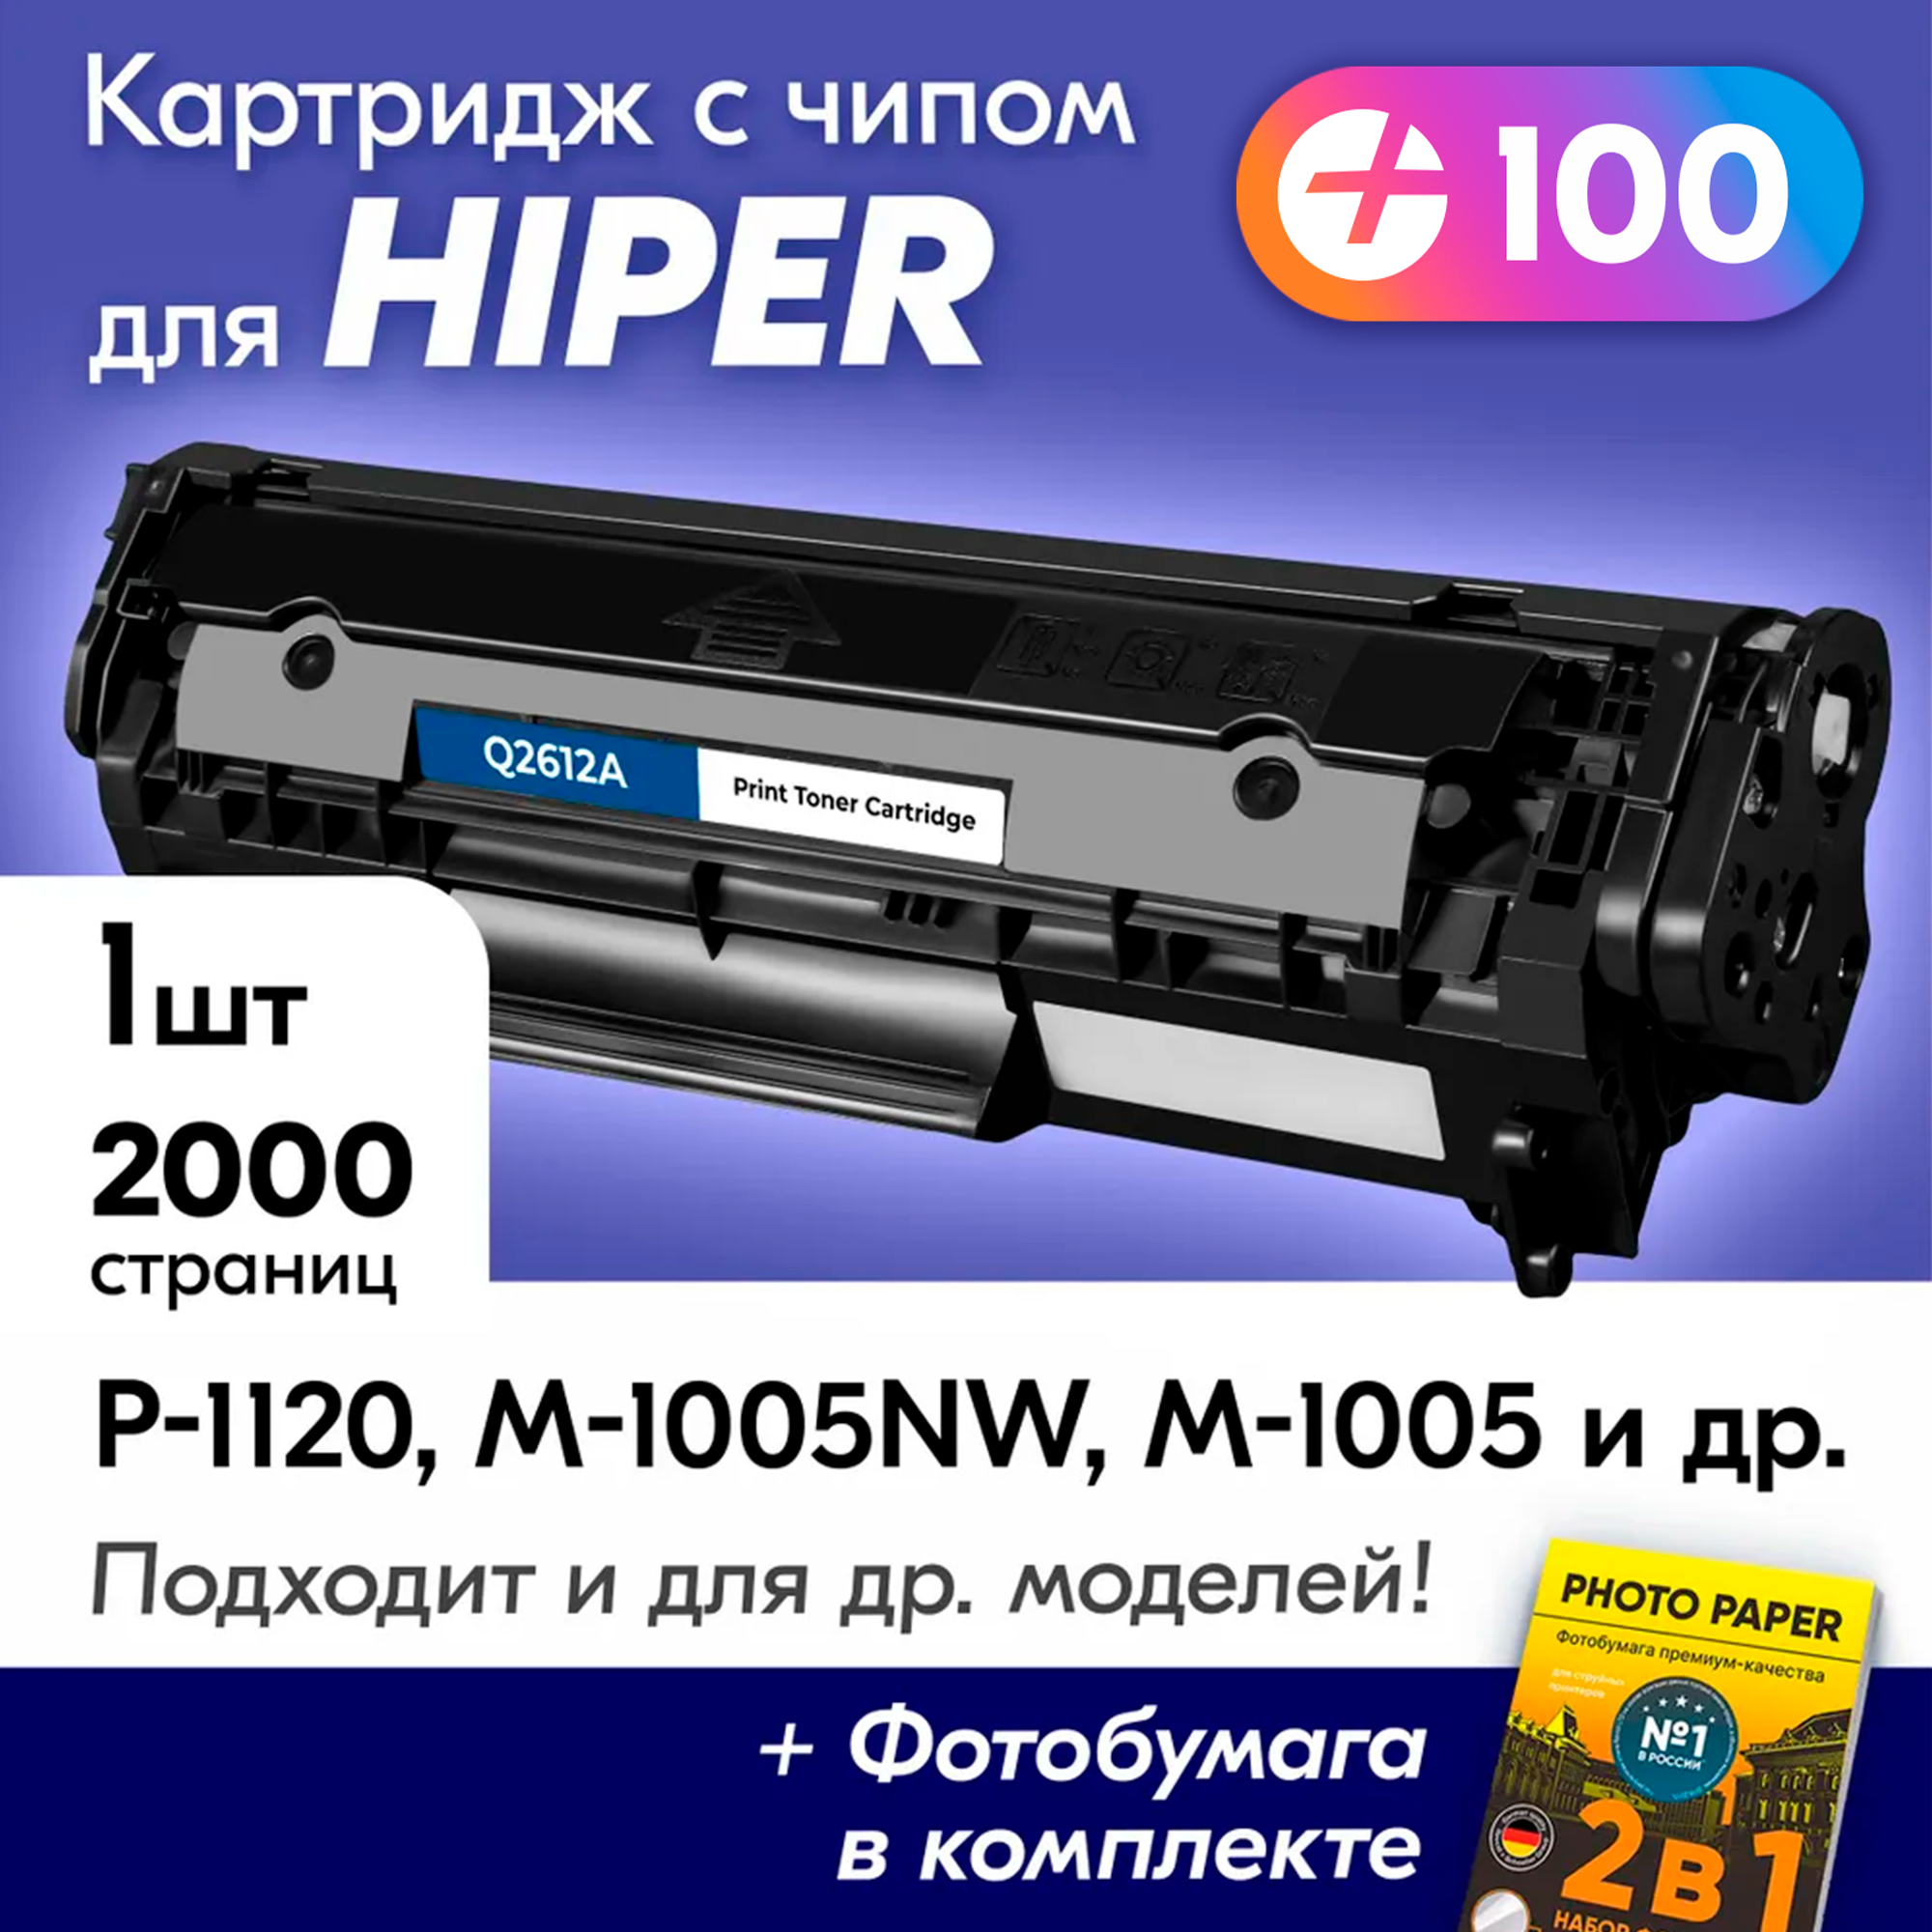 Лазерный картридж для HP (Q2612A) для HIPER P-1120 M-1005NW M-1005 P-1120NW и др с краской (тонером) черный новый заправляемый ресурс 2000 к.